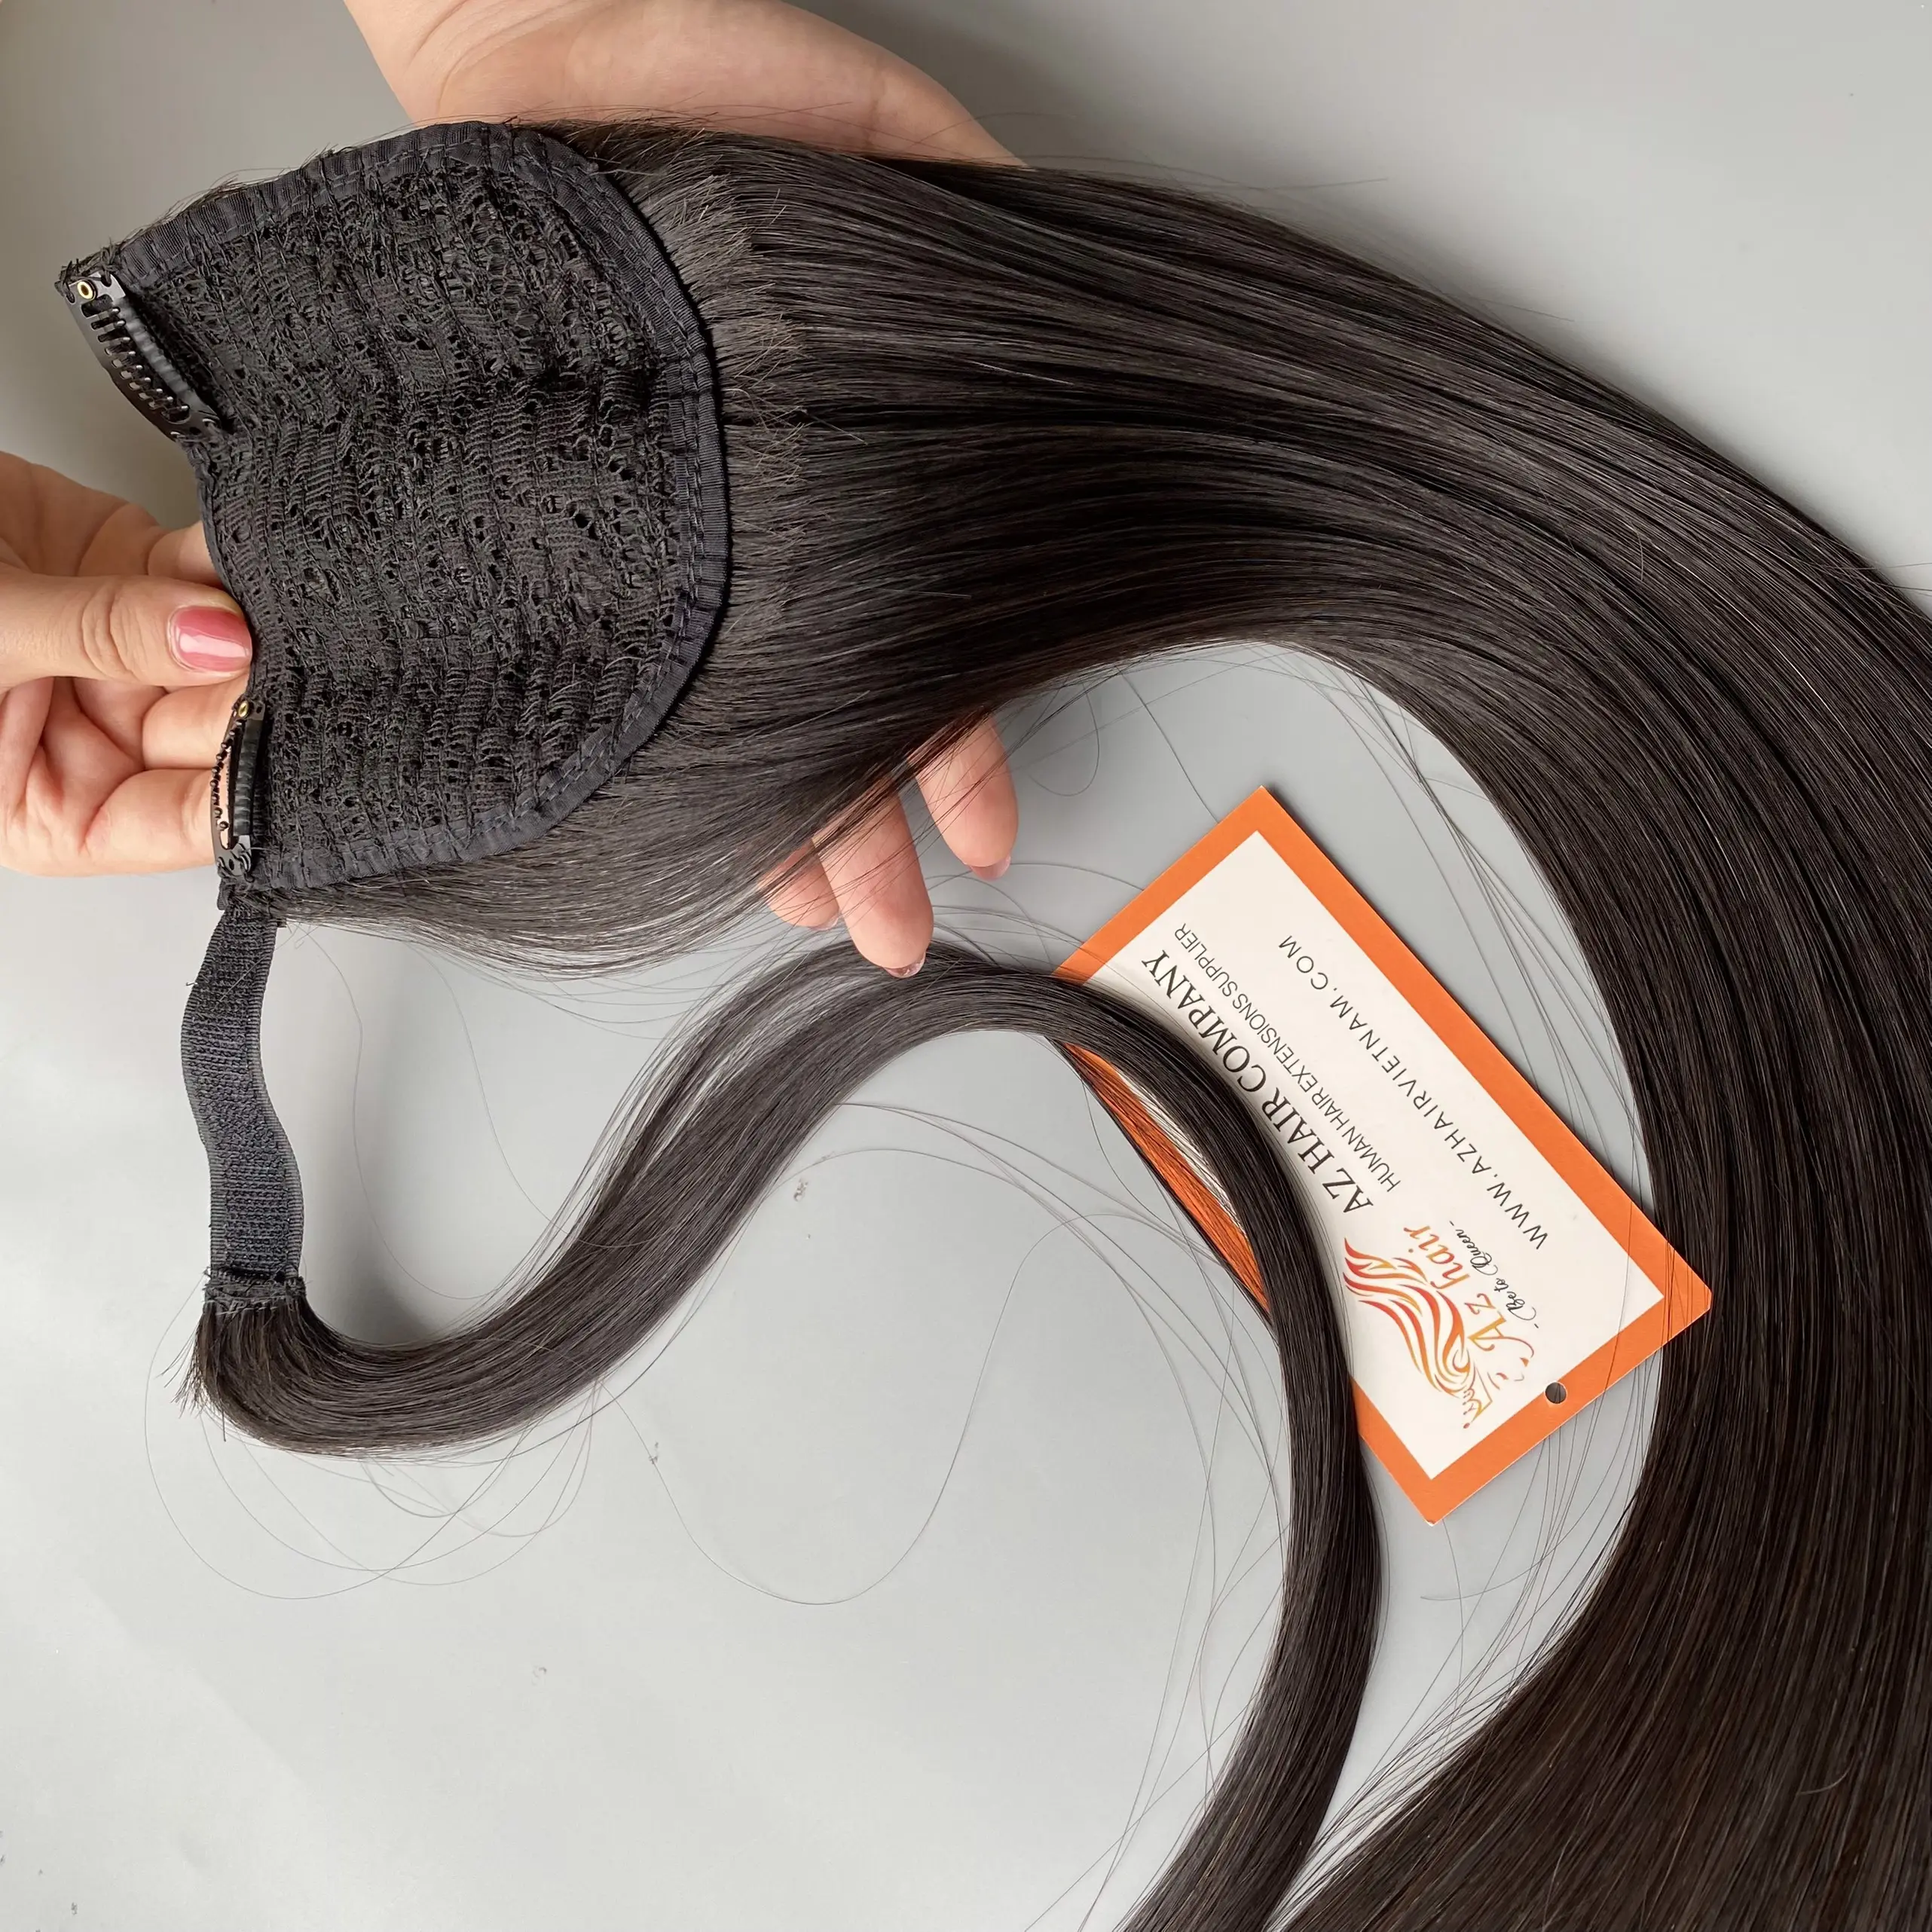 Bán buôn 100% Trinh Nữ thực sự con người ponytails phần mở rộng tóc, nguyên liệu tốt nhất Việt Trinh Nữ tóc tự nhiên bó